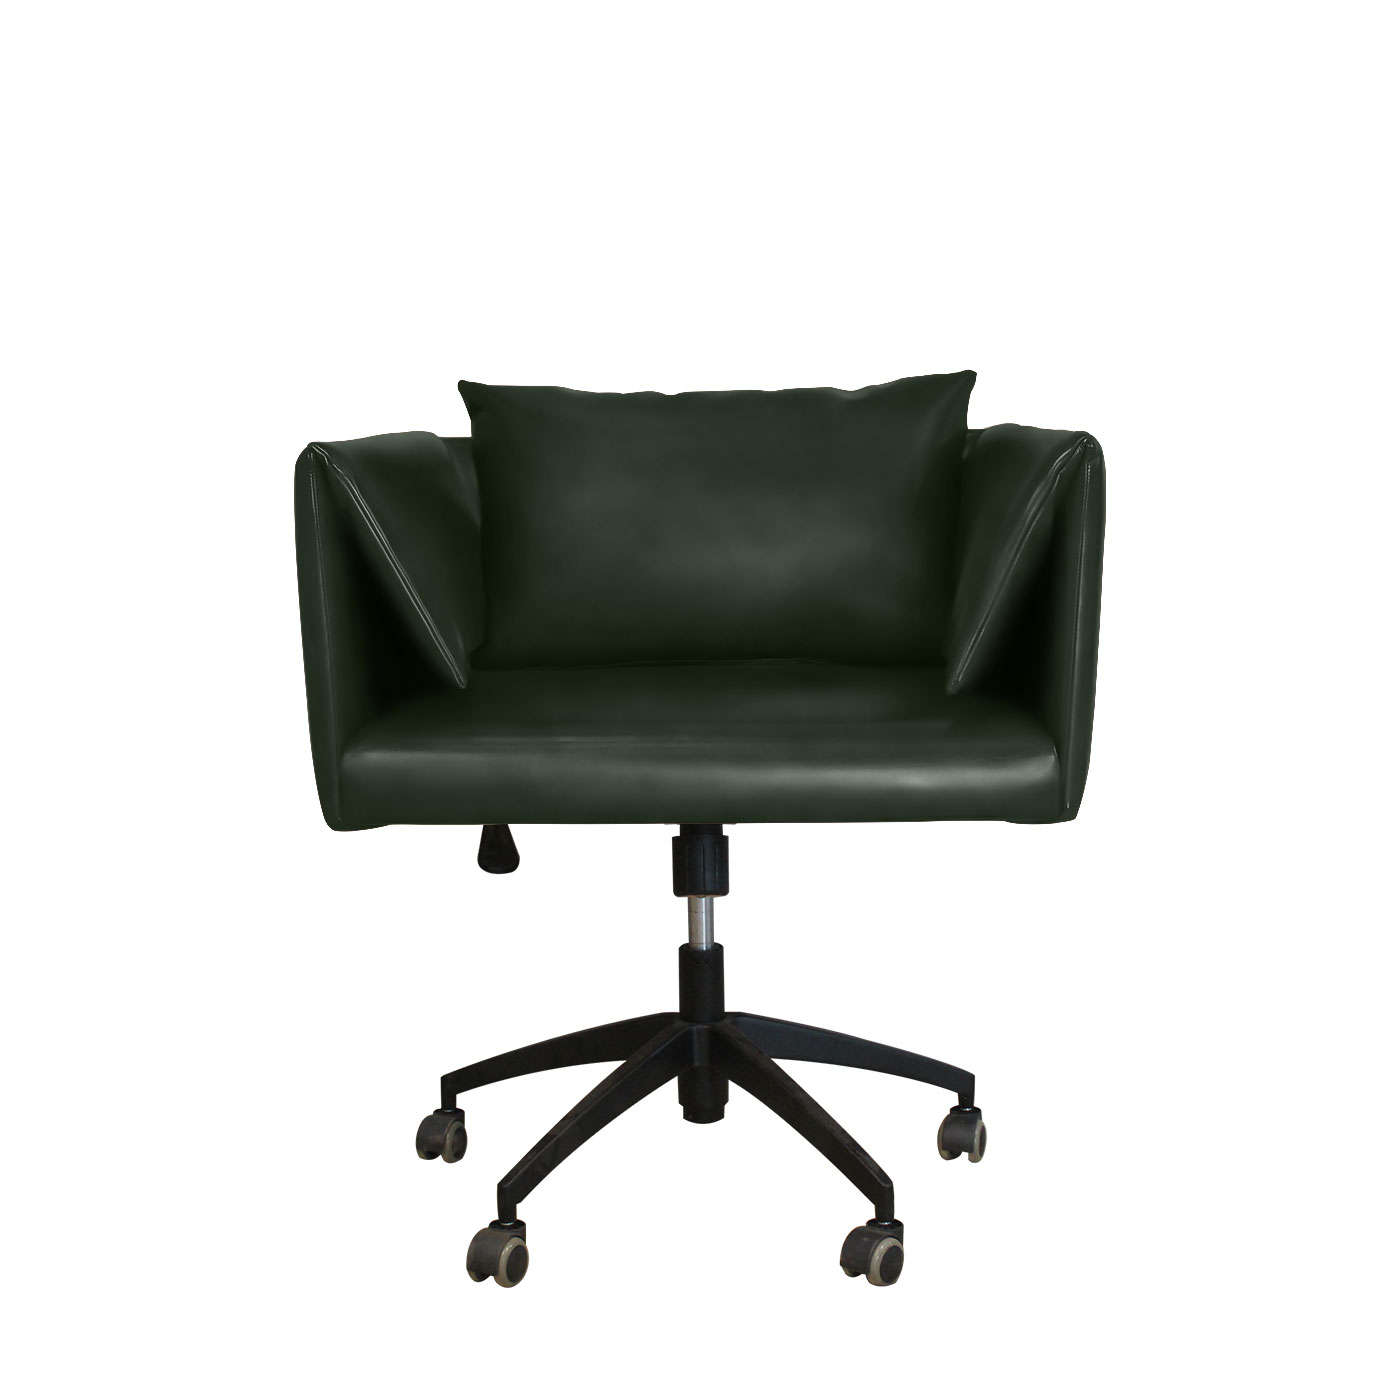 Preston Textured Green Work Chair